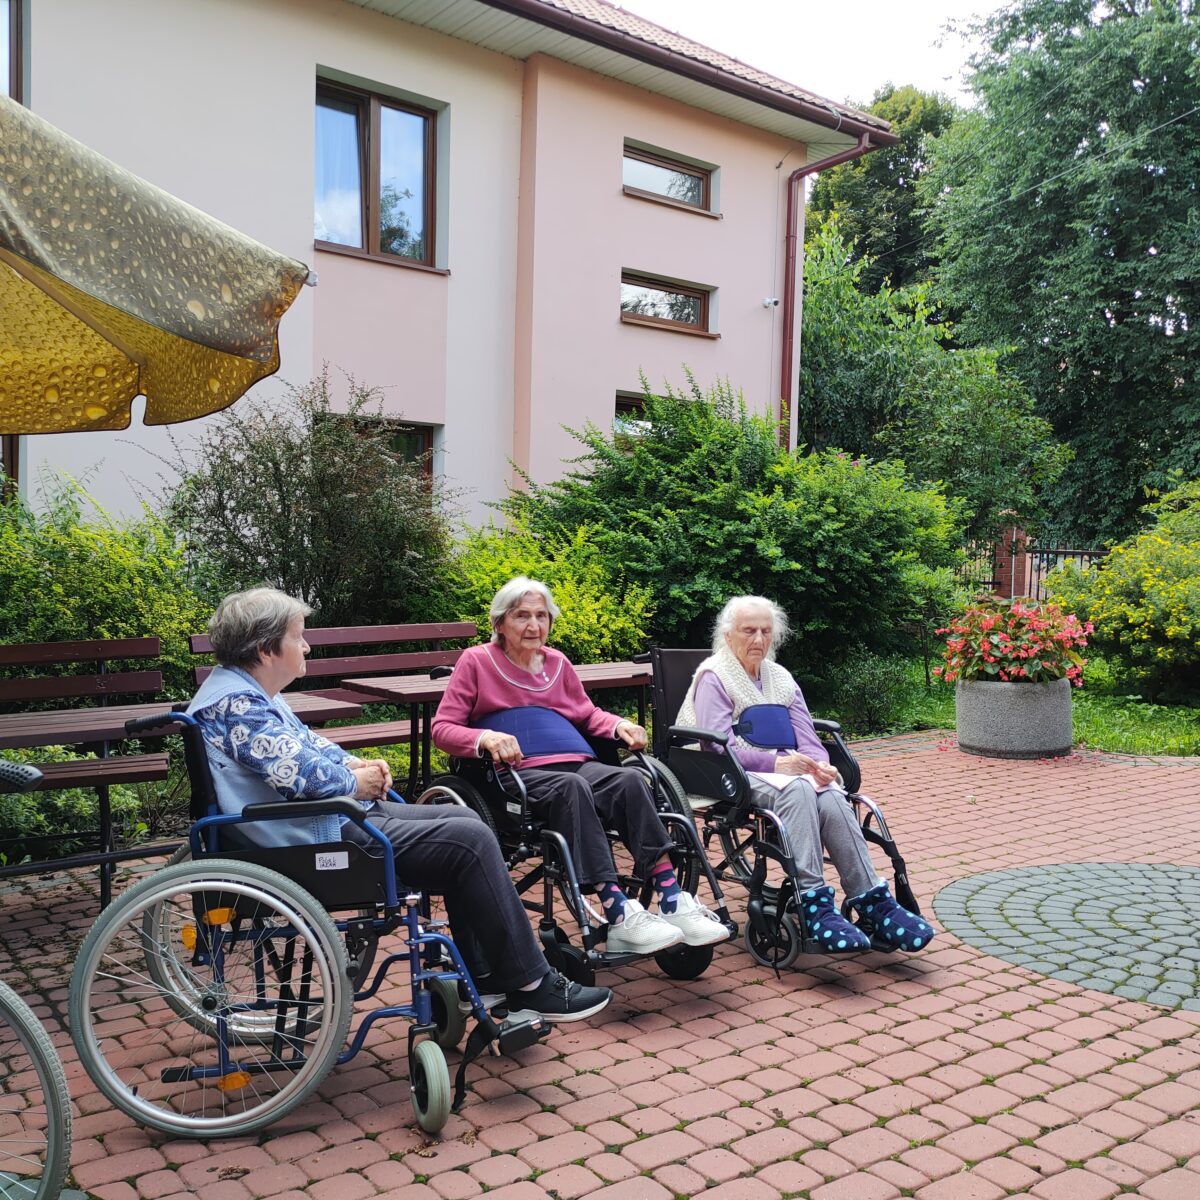 Trzy starsze kobiety siedzące na wózkach inwalidzkich. W tle kawałek żółtego dużego parasola przeciwsłonecznego oraz kawałek budynku. Widać również zielone krzewy i drzewa. Na ziemi jest kostka brukowa w kolorze bordowym i szarym.